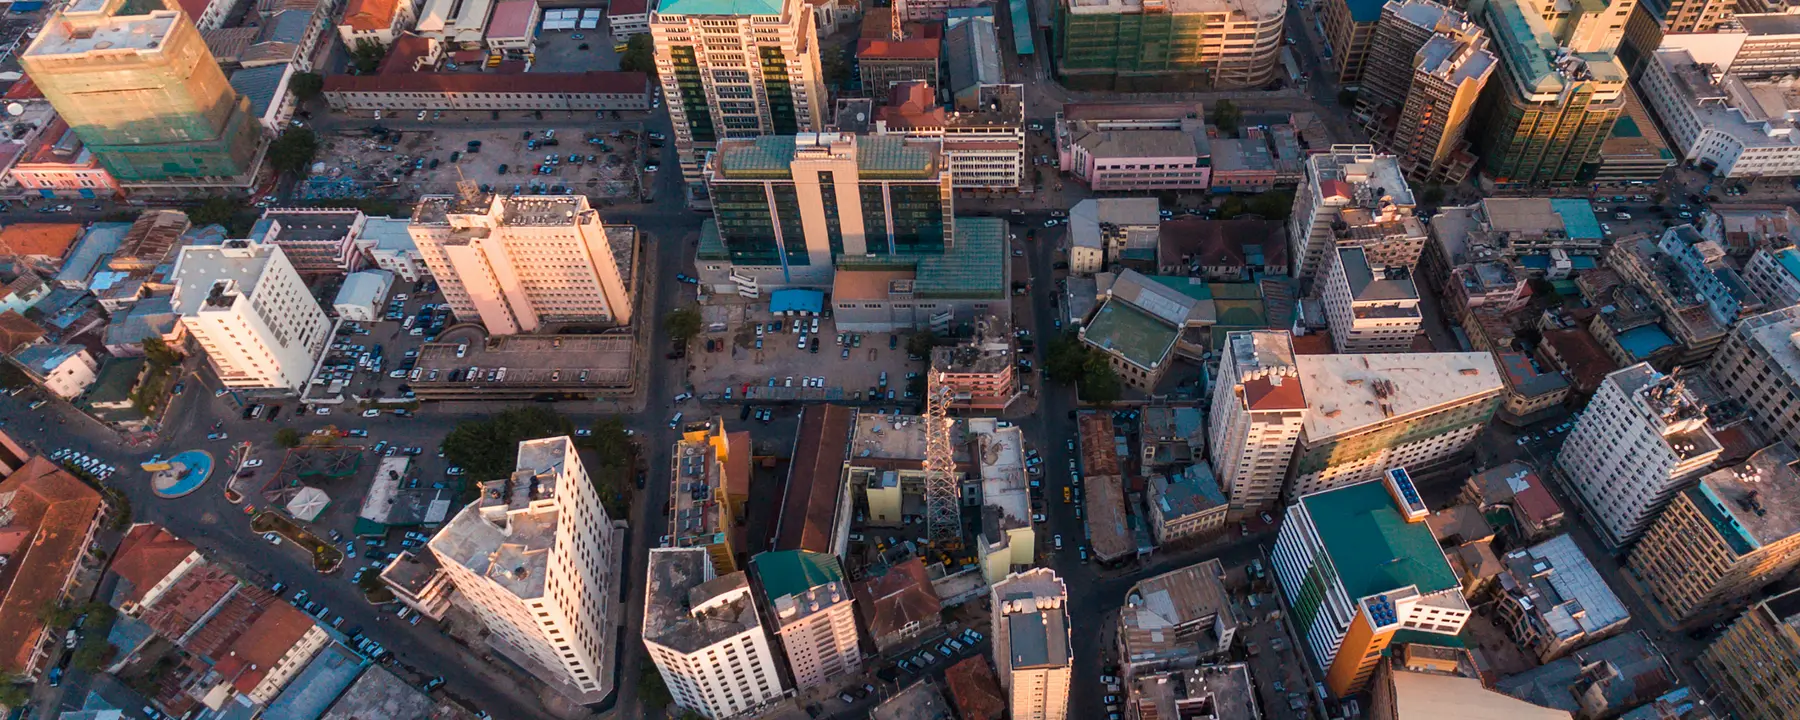 An aerial view of Dar es Salaam, Tanzania